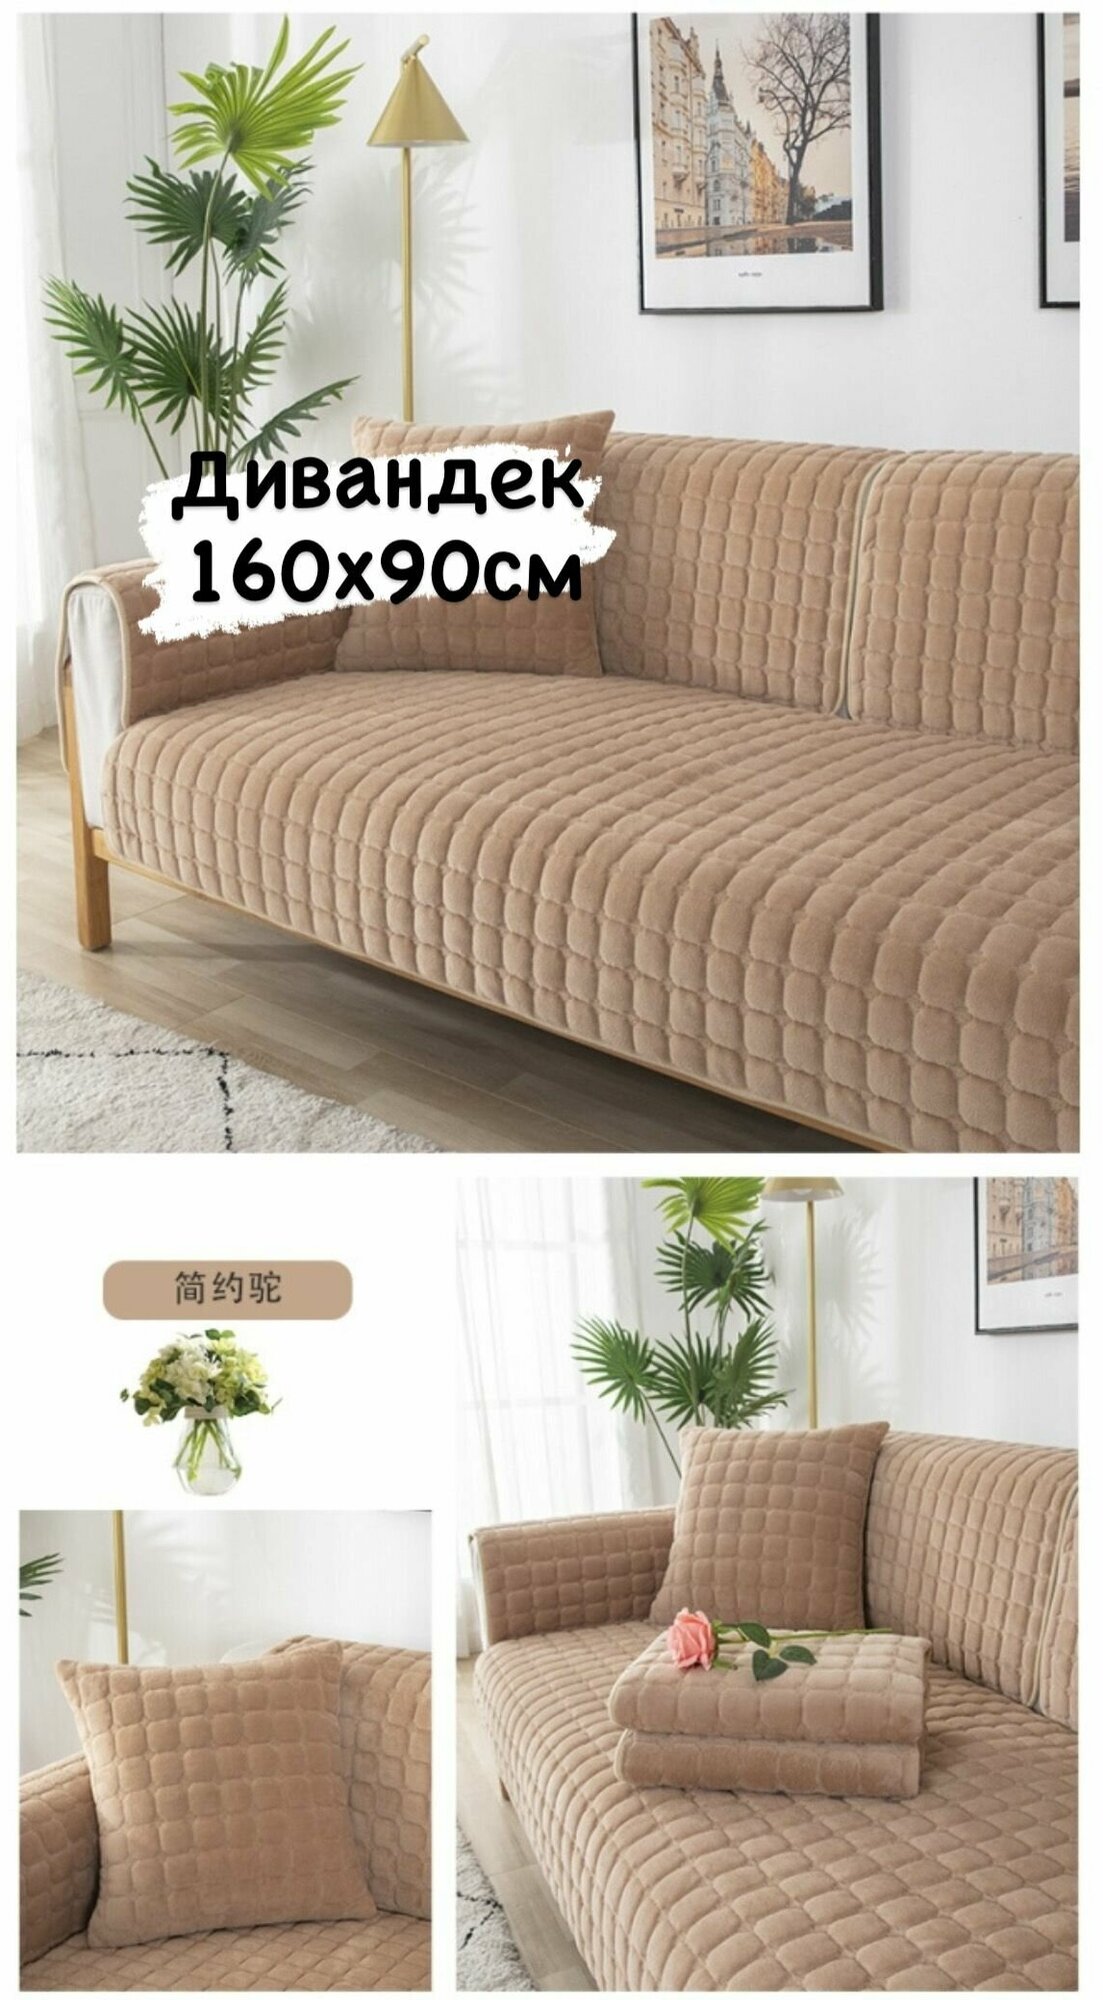 Дивандек для дивана накидка на диван велюровая 90х160 см. 1 шт чехлы для мягкой мебели  чехол на диван покрывало на диван